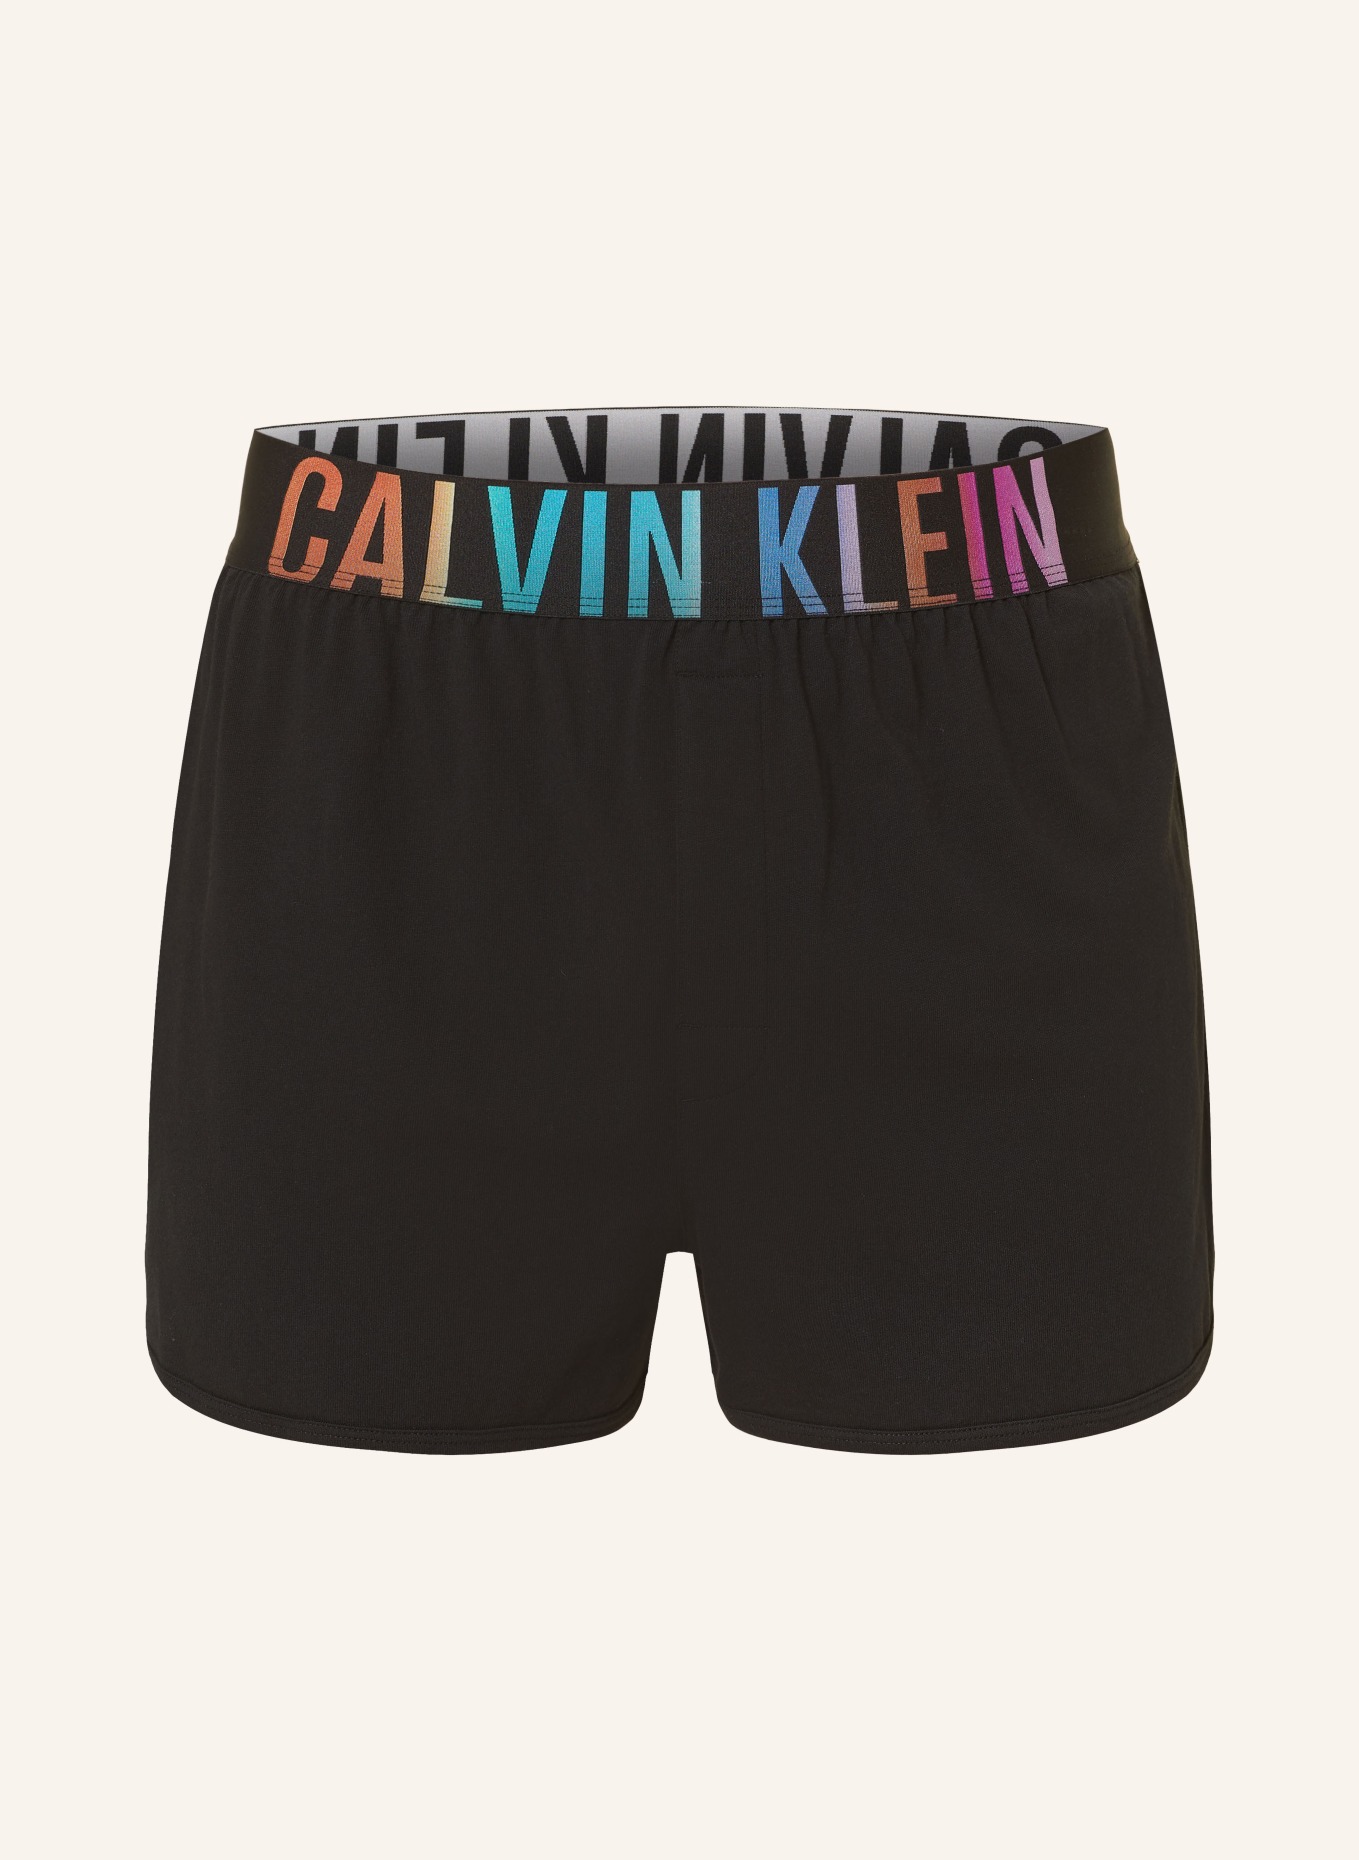 Calvin Klein Schlafshorts INTENSE POWER, Farbe: SCHWARZ (Bild 1)